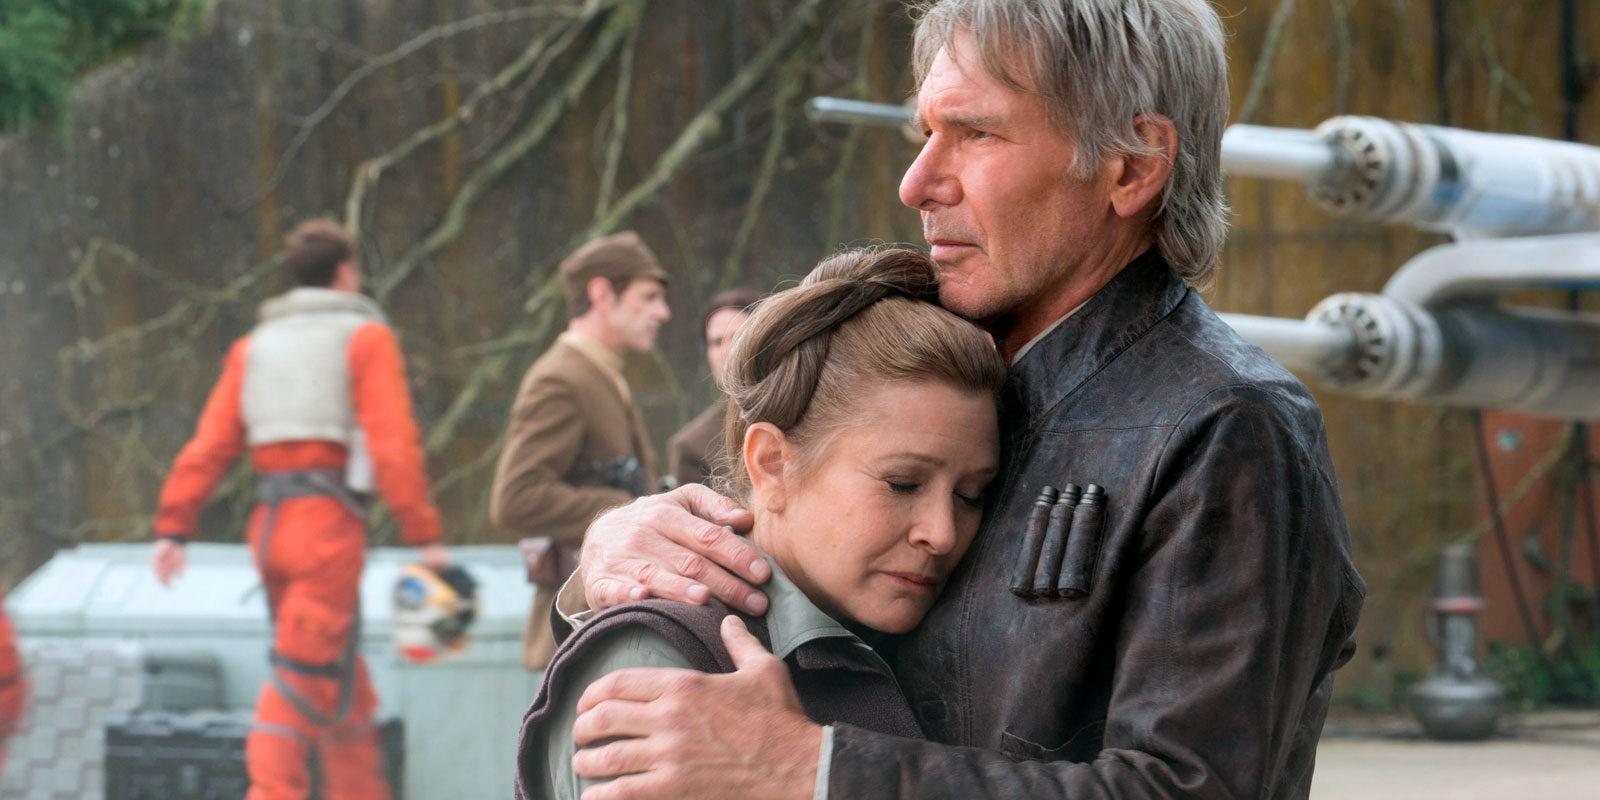 El spin off de 'Star Wars' basado en Han Solo arranca oficialmente su rodaje